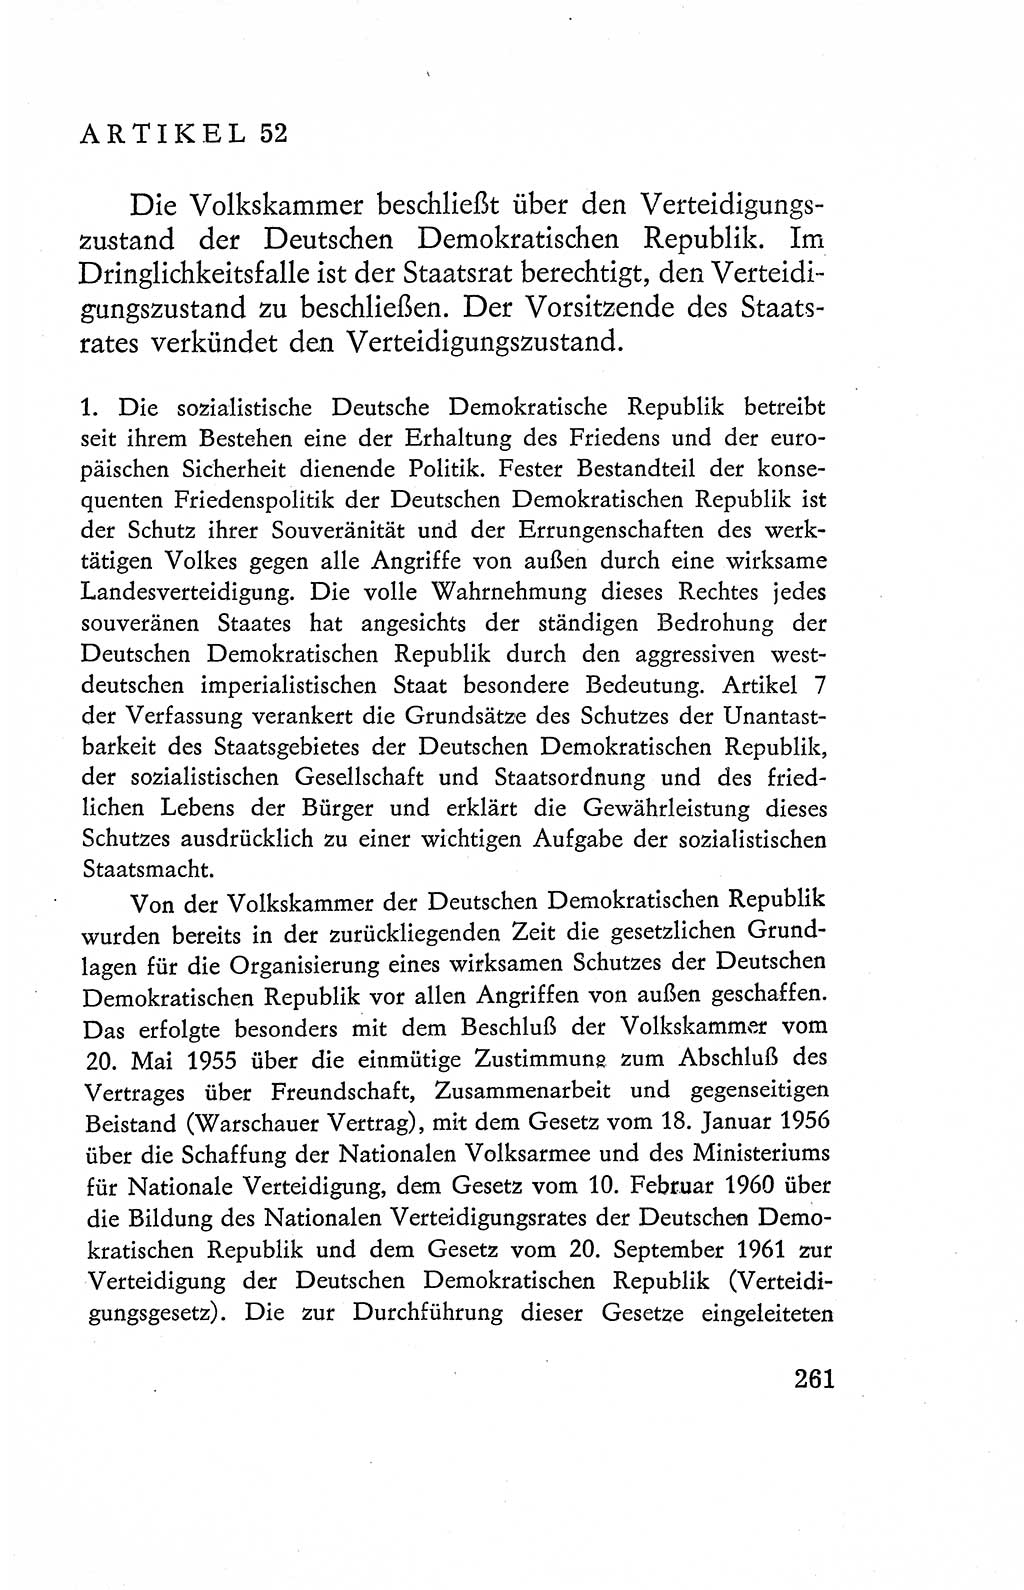 Verfassung der Deutschen Demokratischen Republik (DDR), Dokumente, Kommentar 1969, Band 2, Seite 261 (Verf. DDR Dok. Komm. 1969, Bd. 2, S. 261)